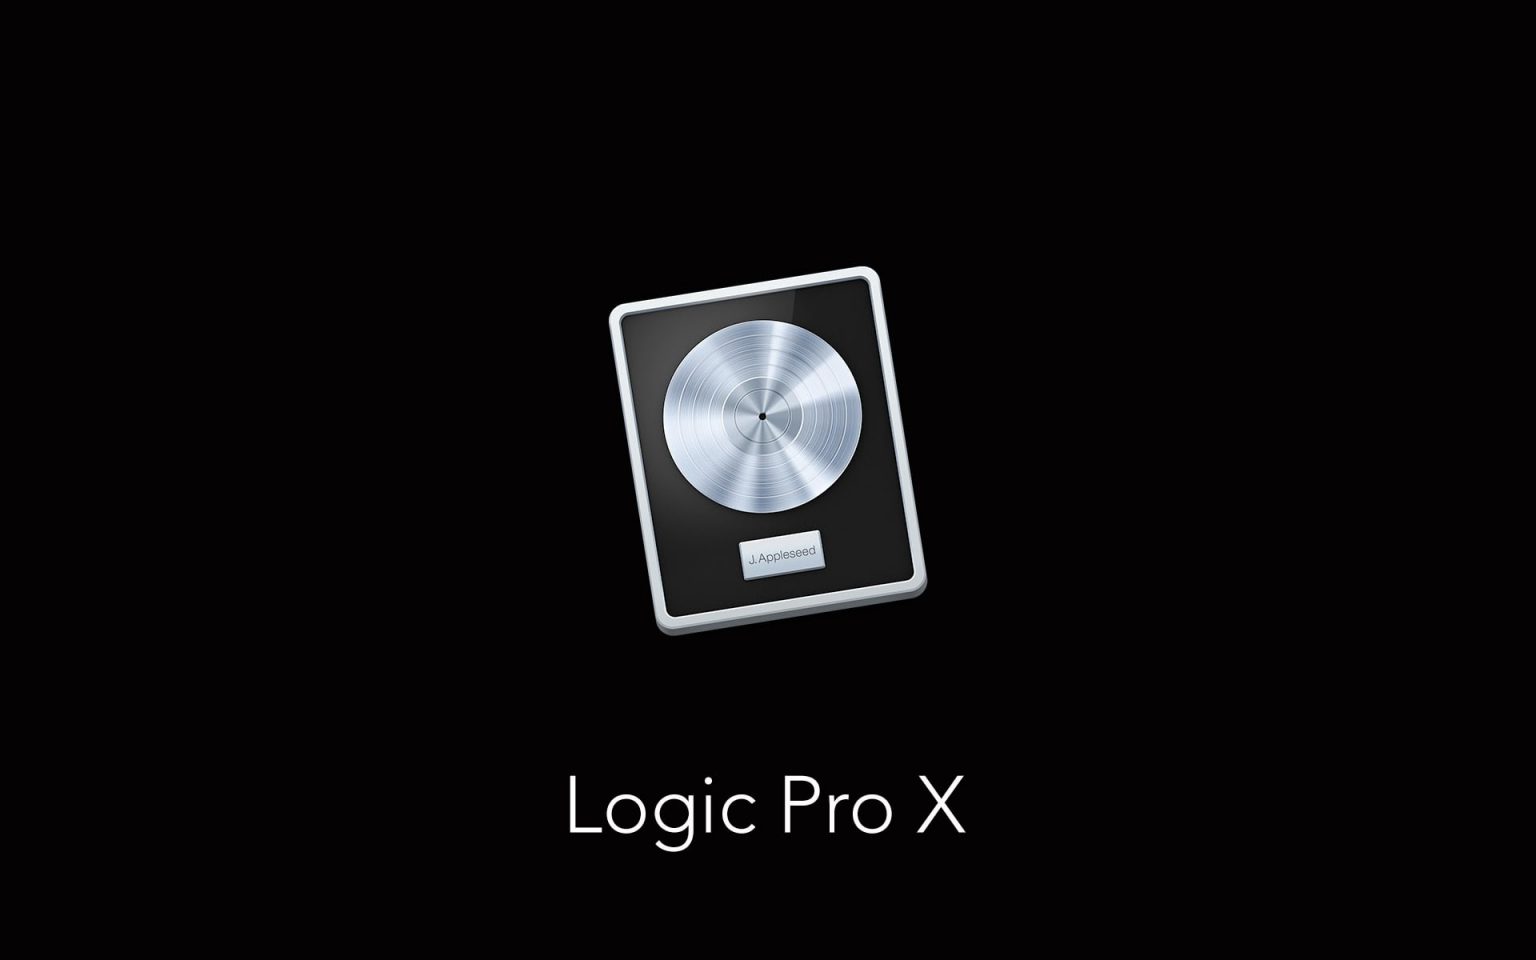 logic pro x 10.5 free download